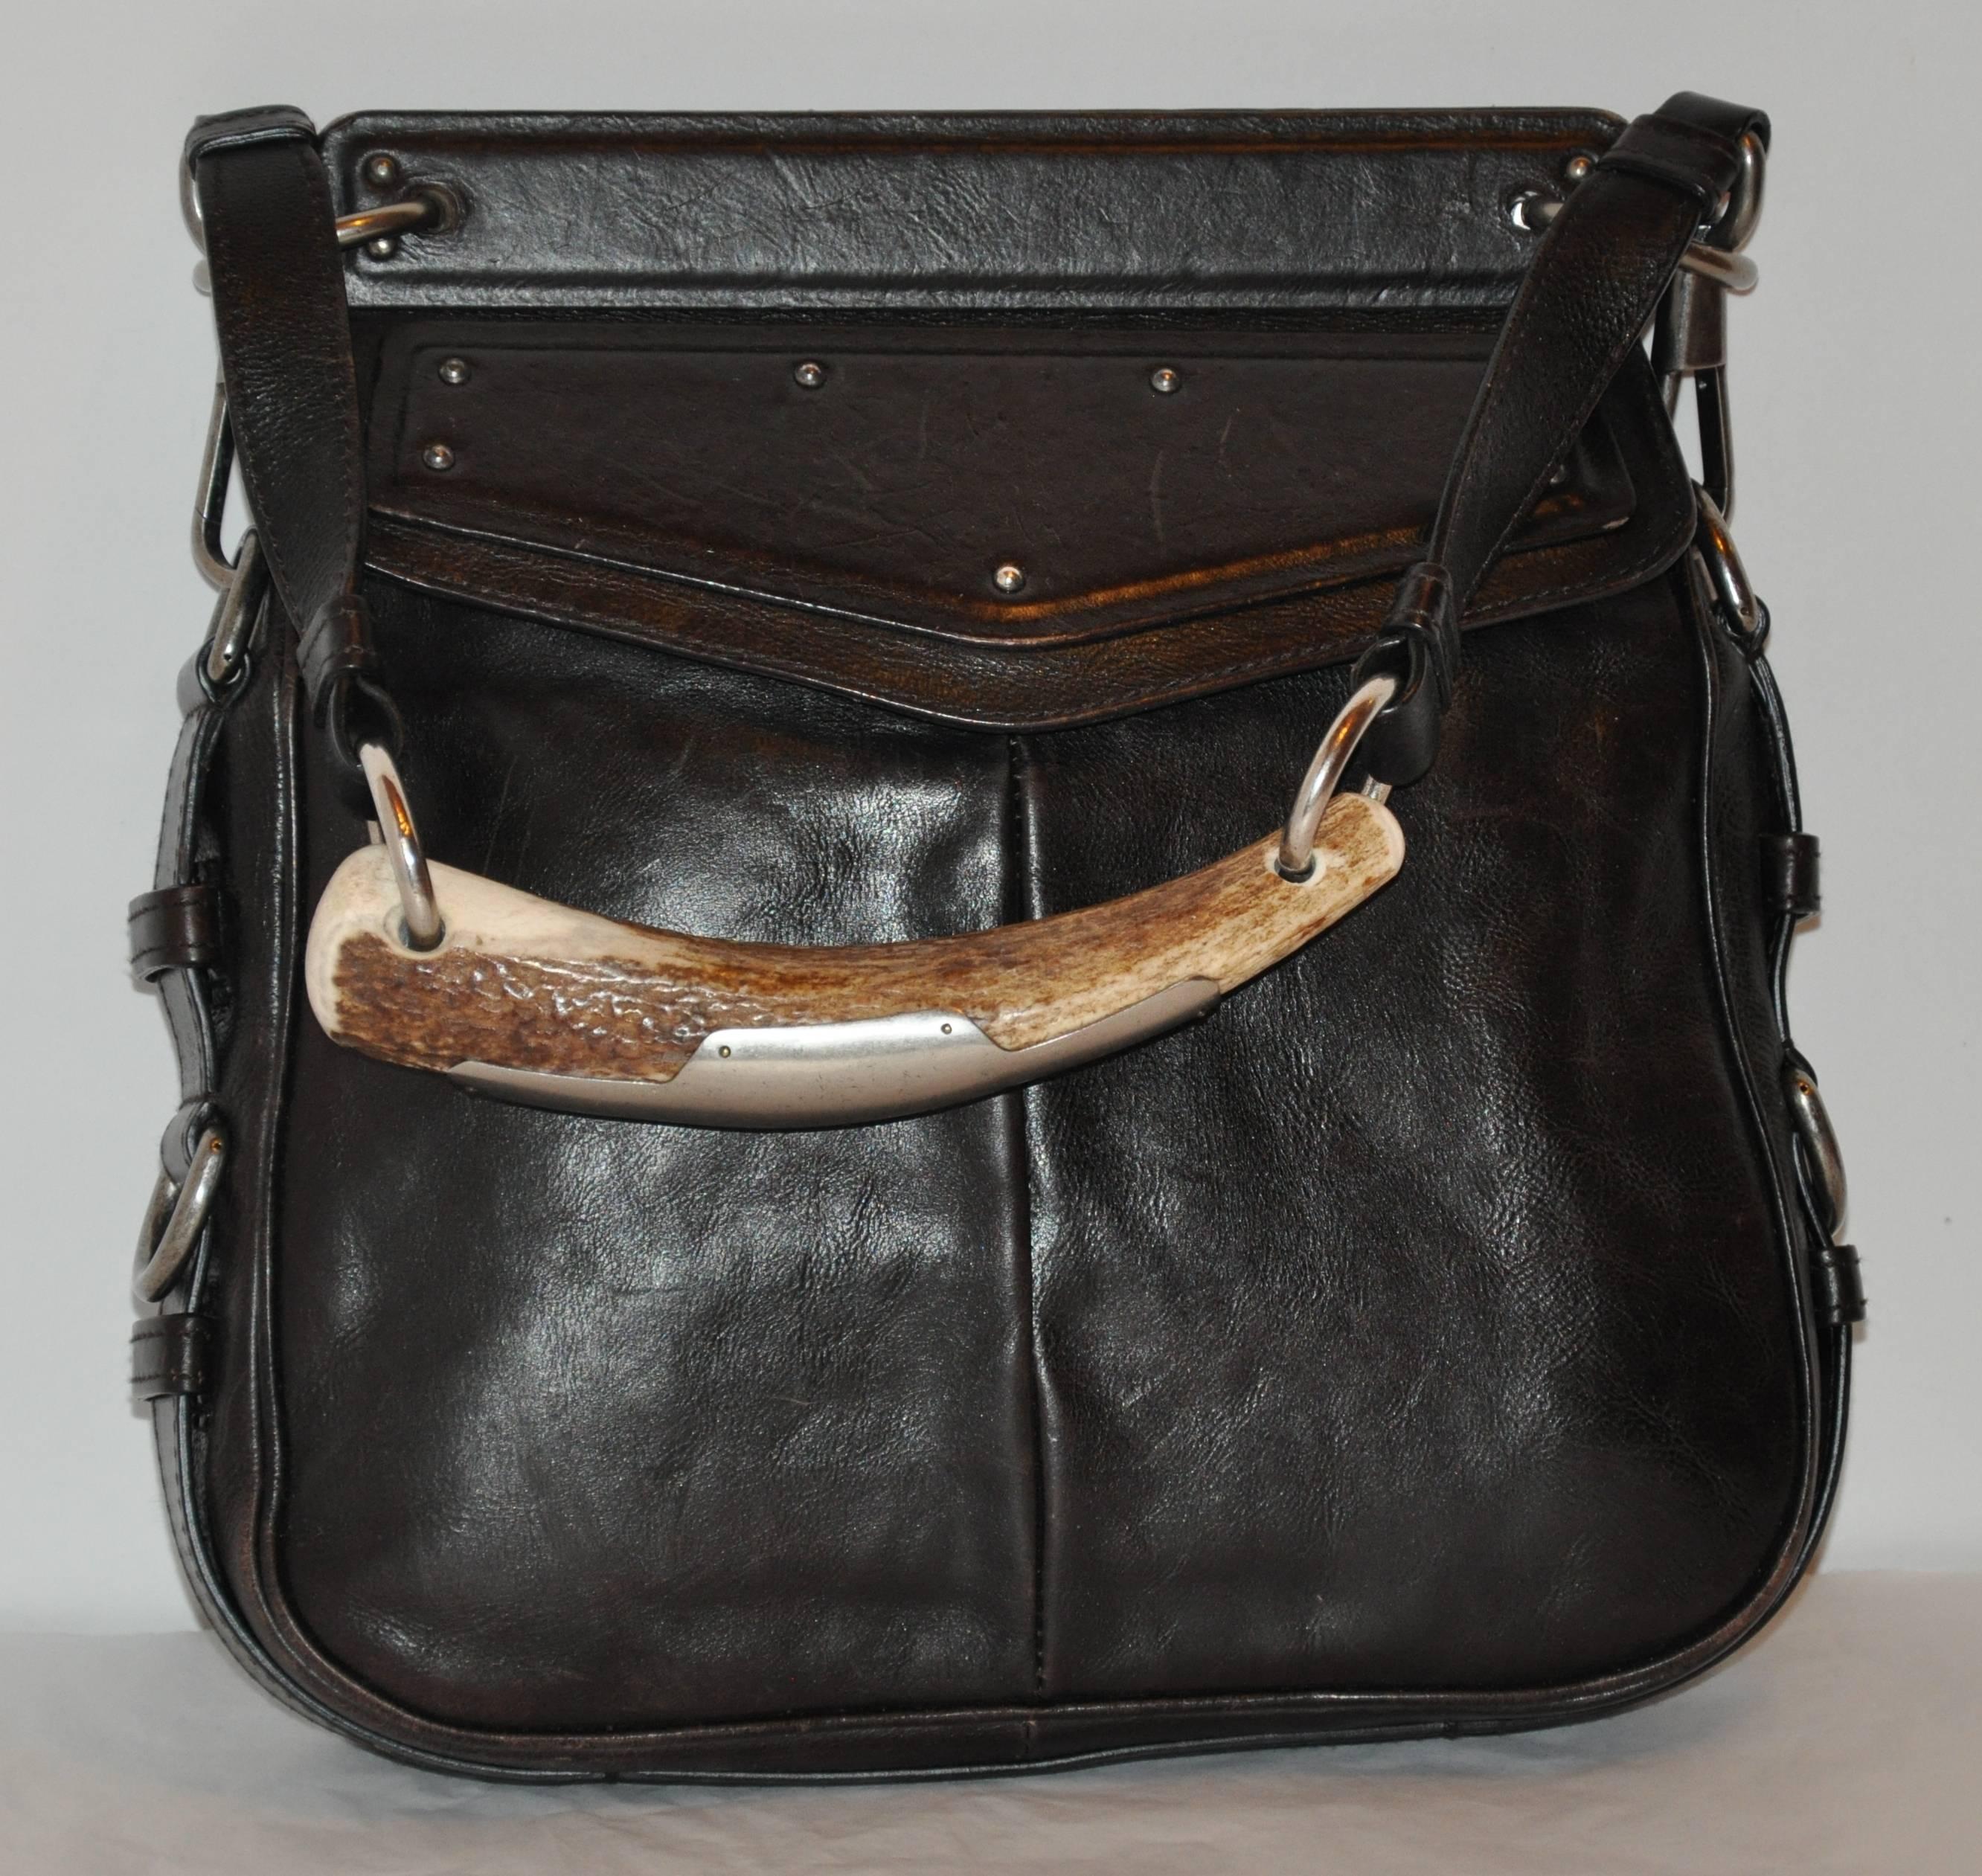              Le sac à main Yves Saint Laurent en cuir de veau noir comporte une grande poignée en forme de 